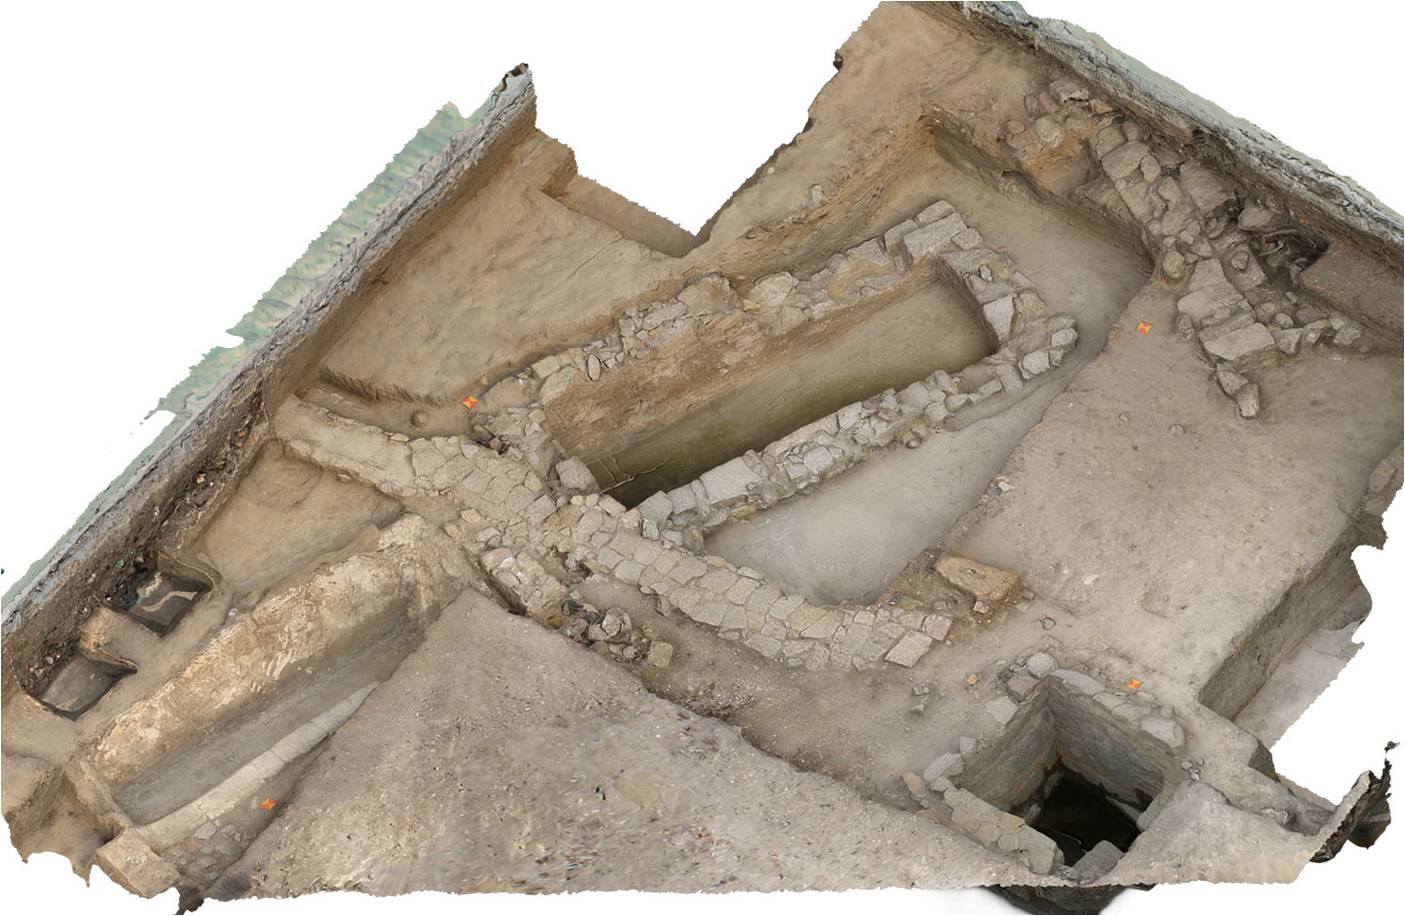 Coloane | Achados arqueológicos mostram actividade humana há 4000 anos